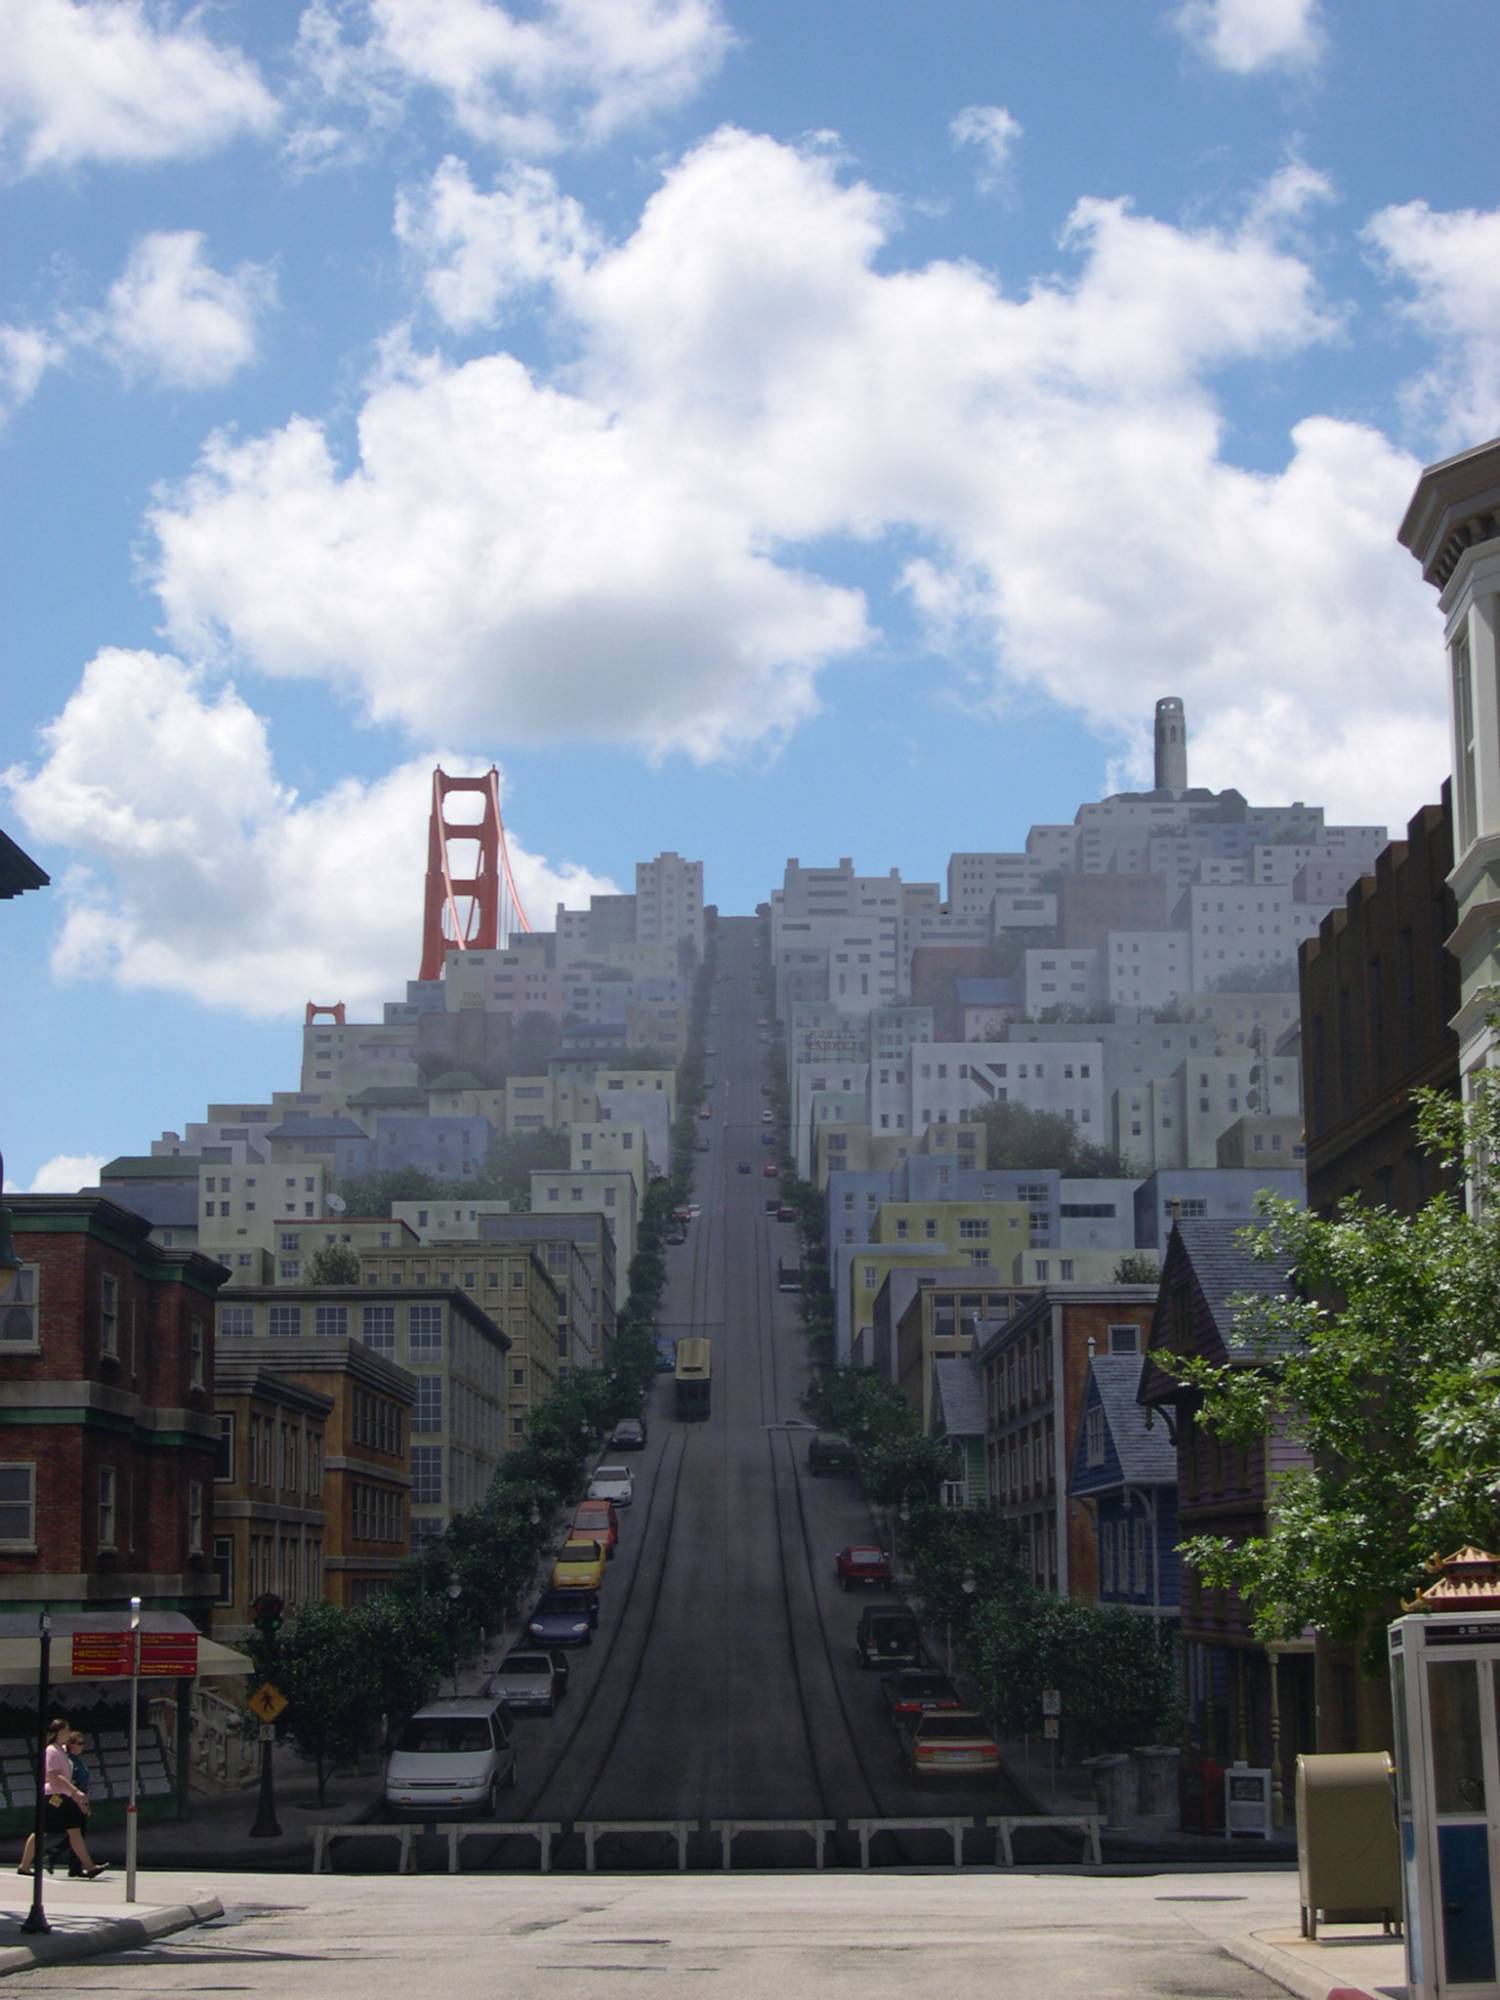 Disney Studios - San Francisco Street Scene